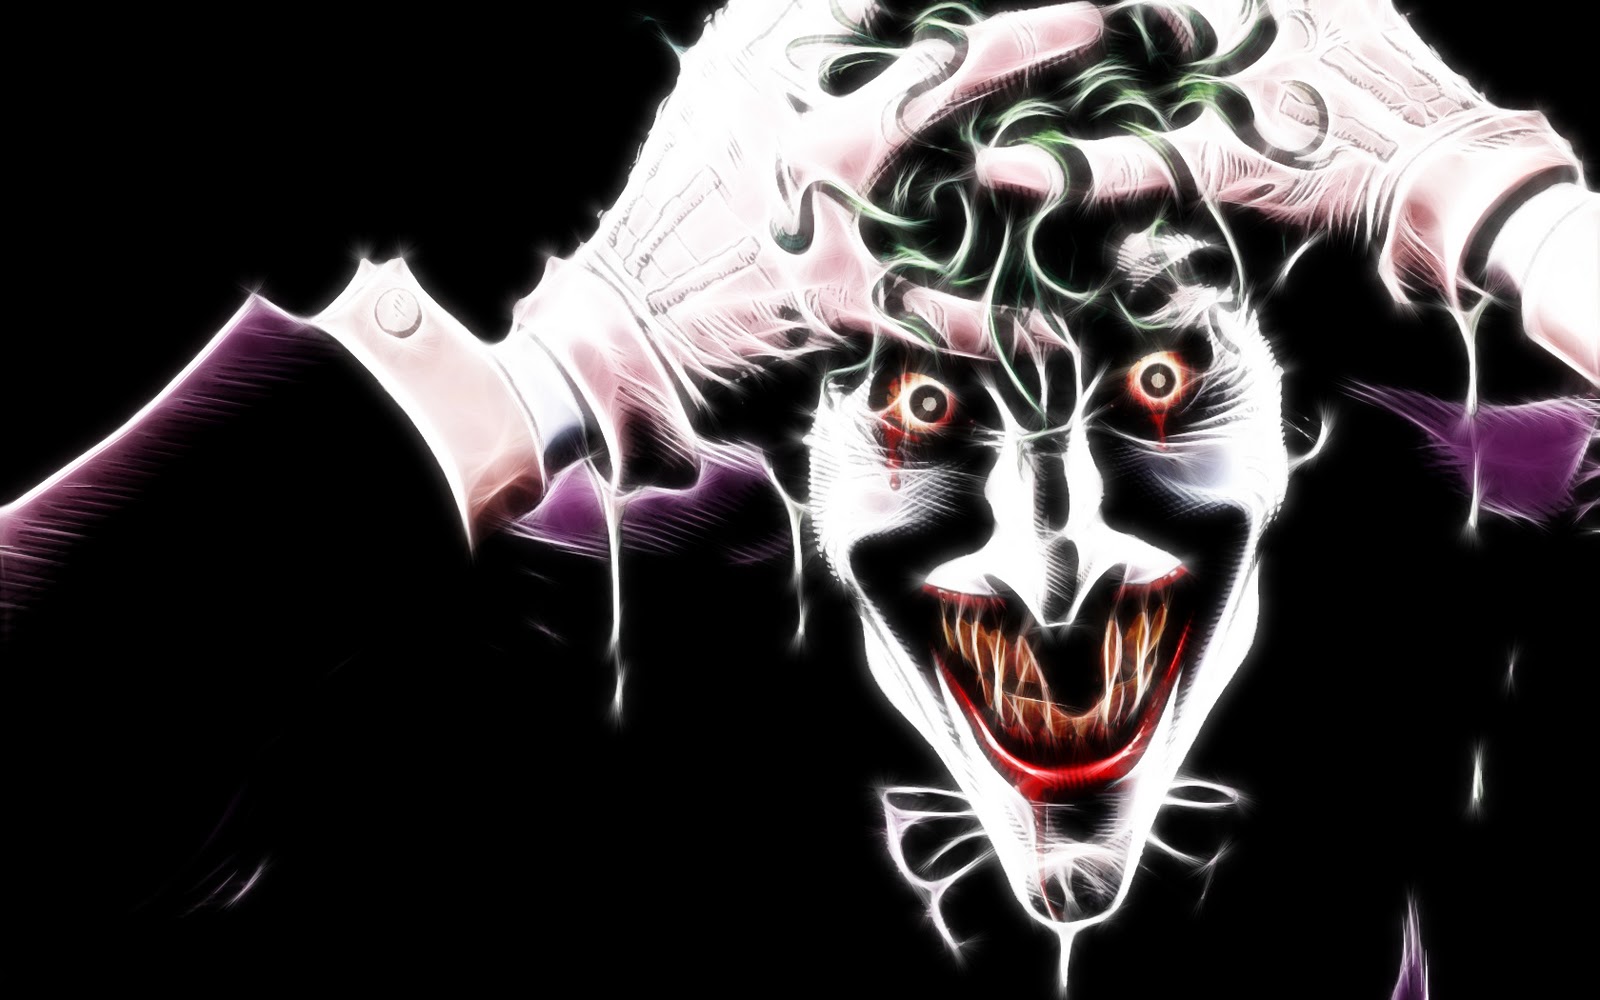 Scary Joker Wallpapers